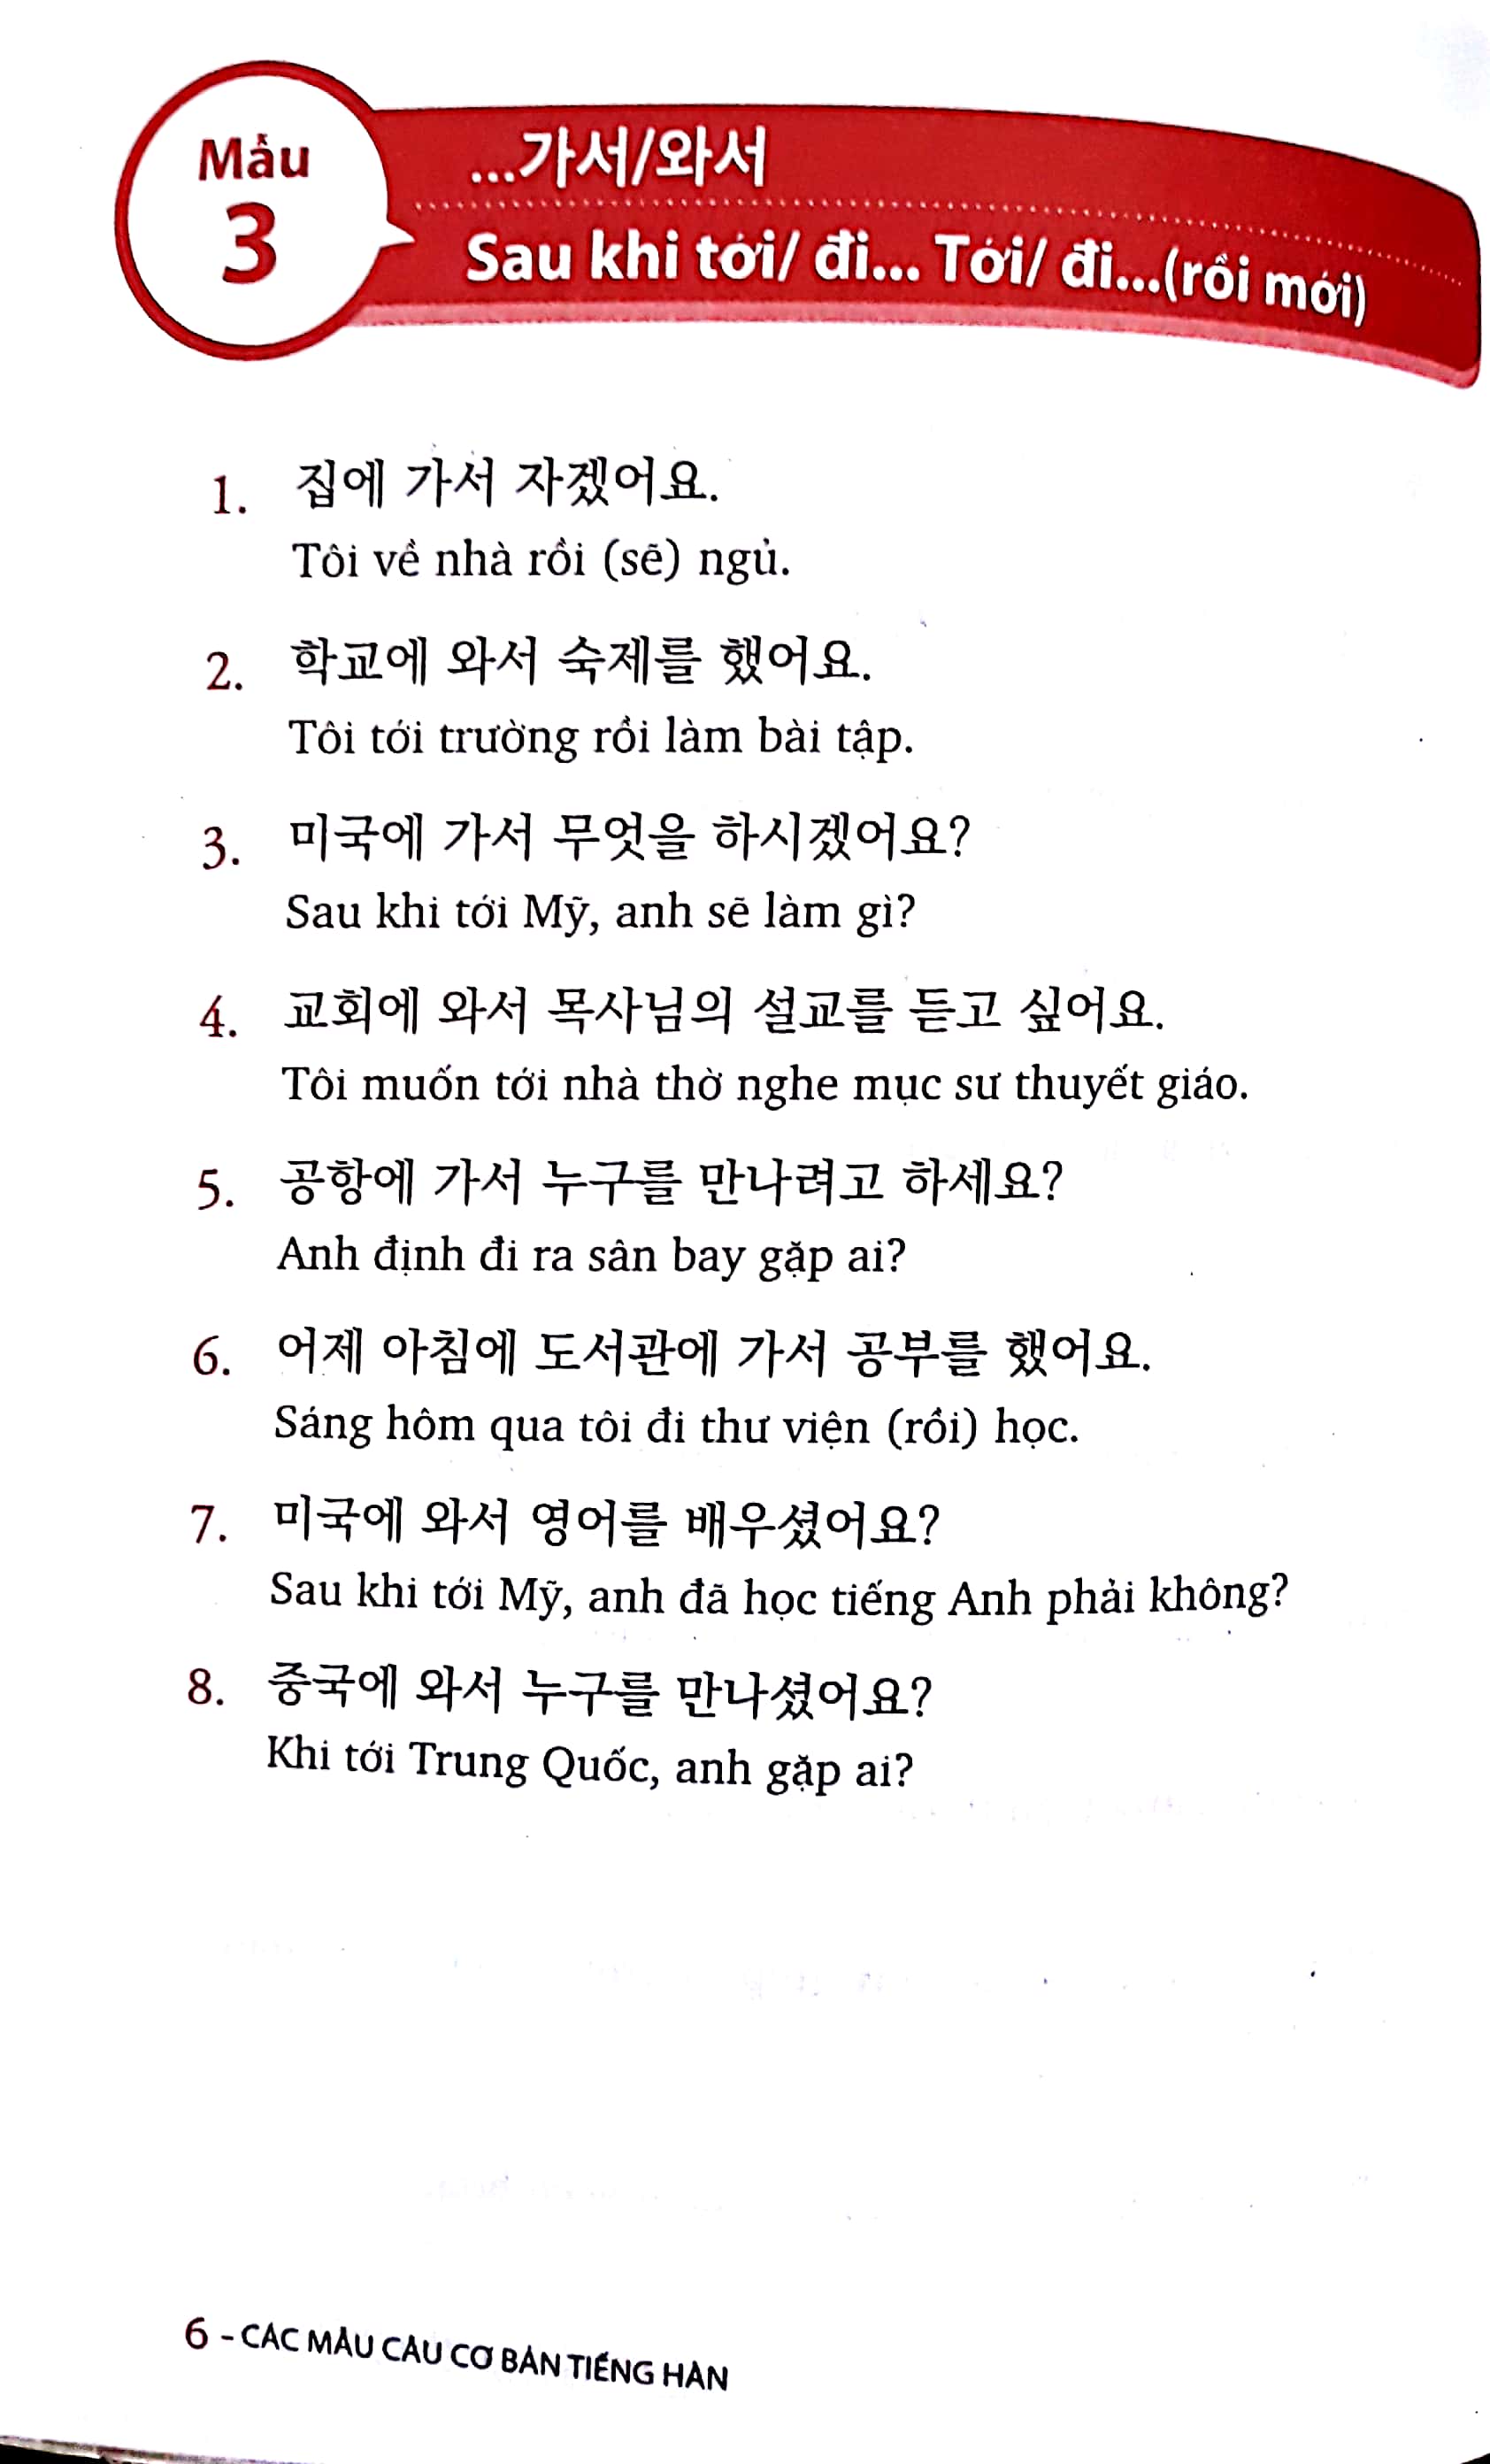 Các Mẫu Câu Cơ Bản Tiếng Hàn 2018 PDF